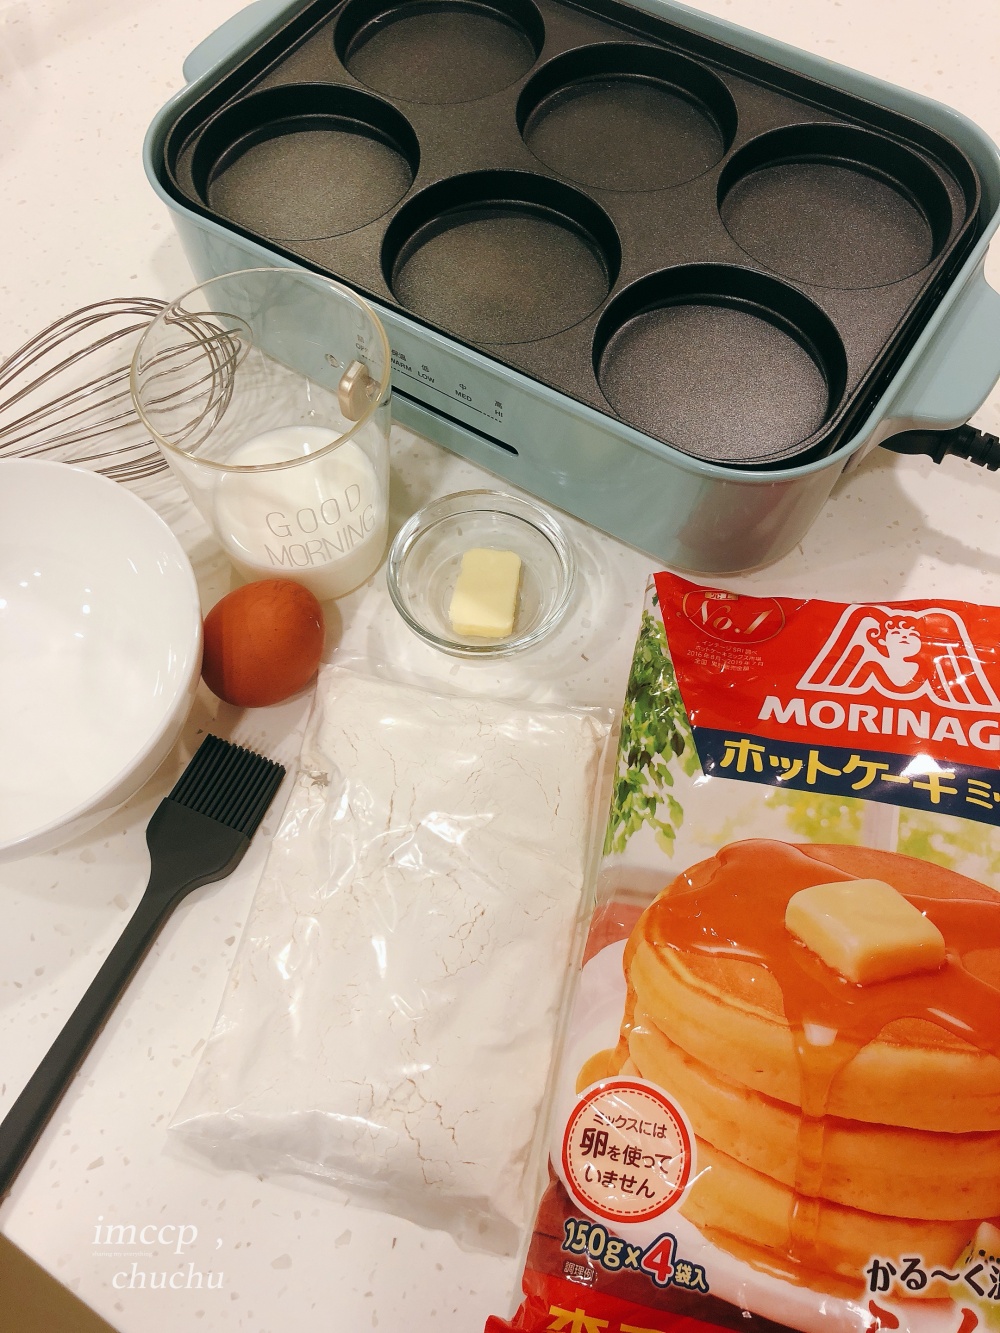 日本BRUNO電烤盤六款配件介紹/食譜分享+優缺點心得大公開